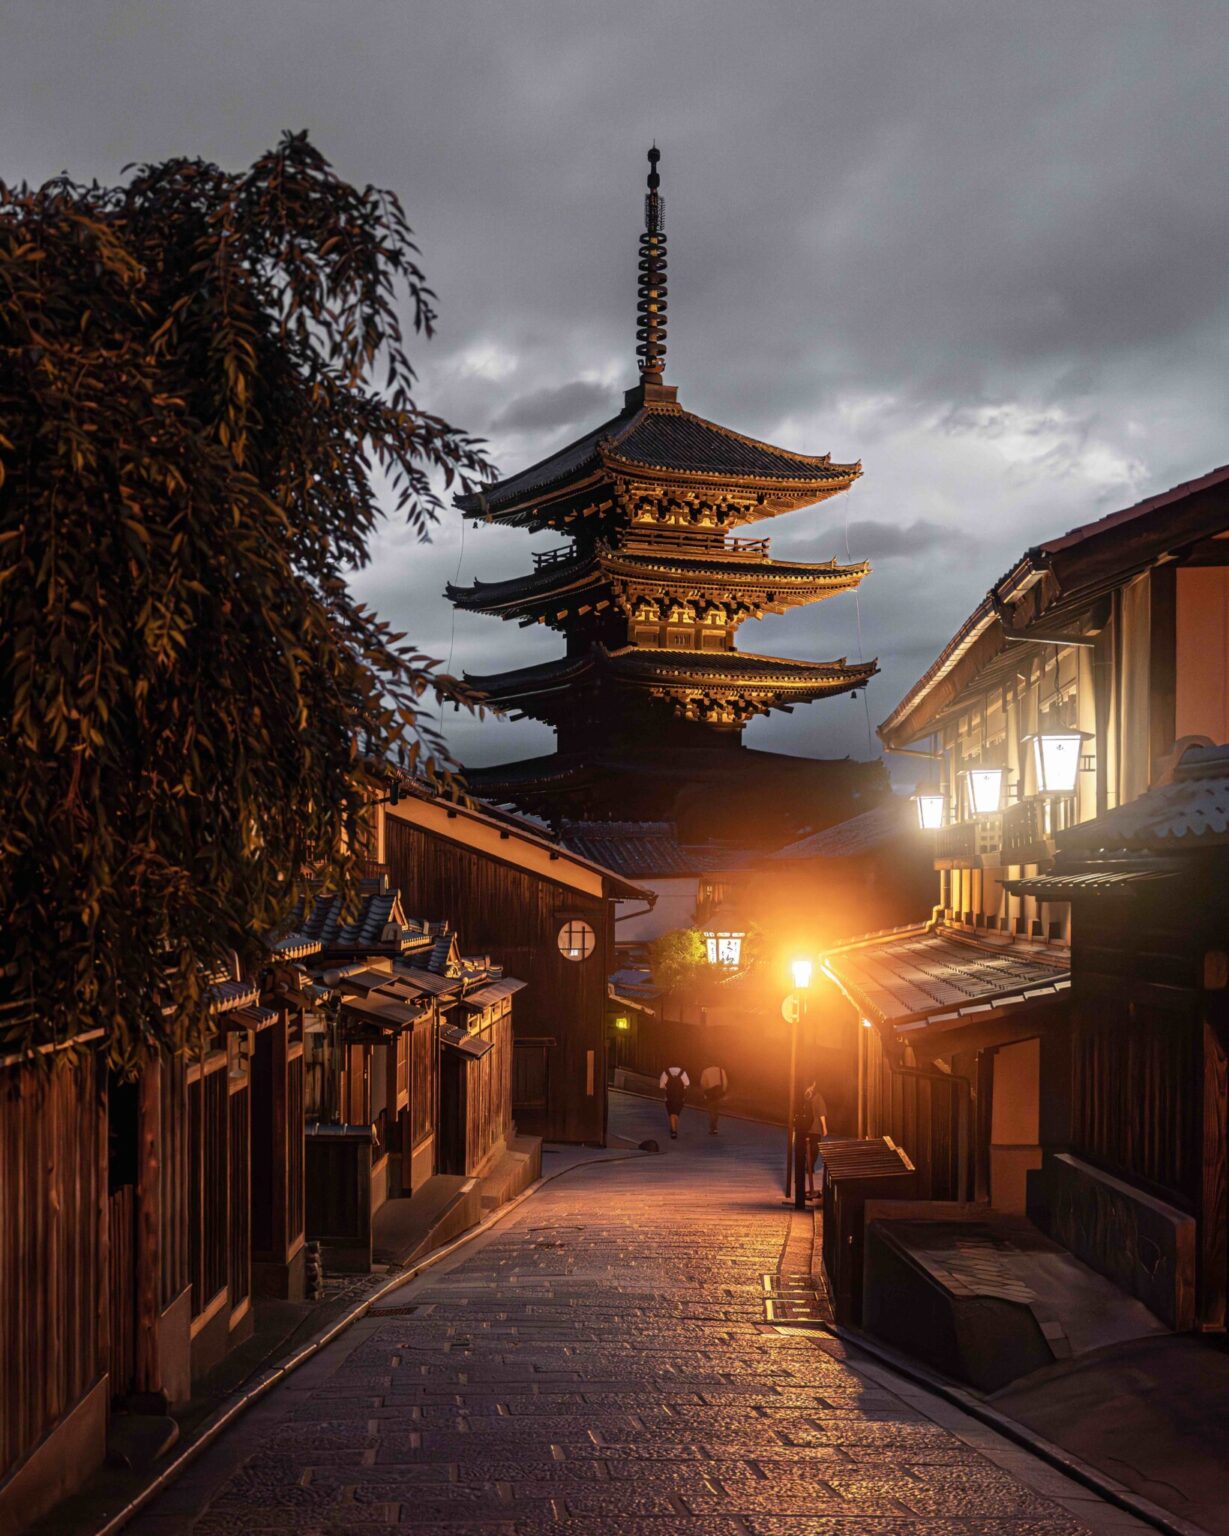 #京都散策 #絶景といえば #八坂通り